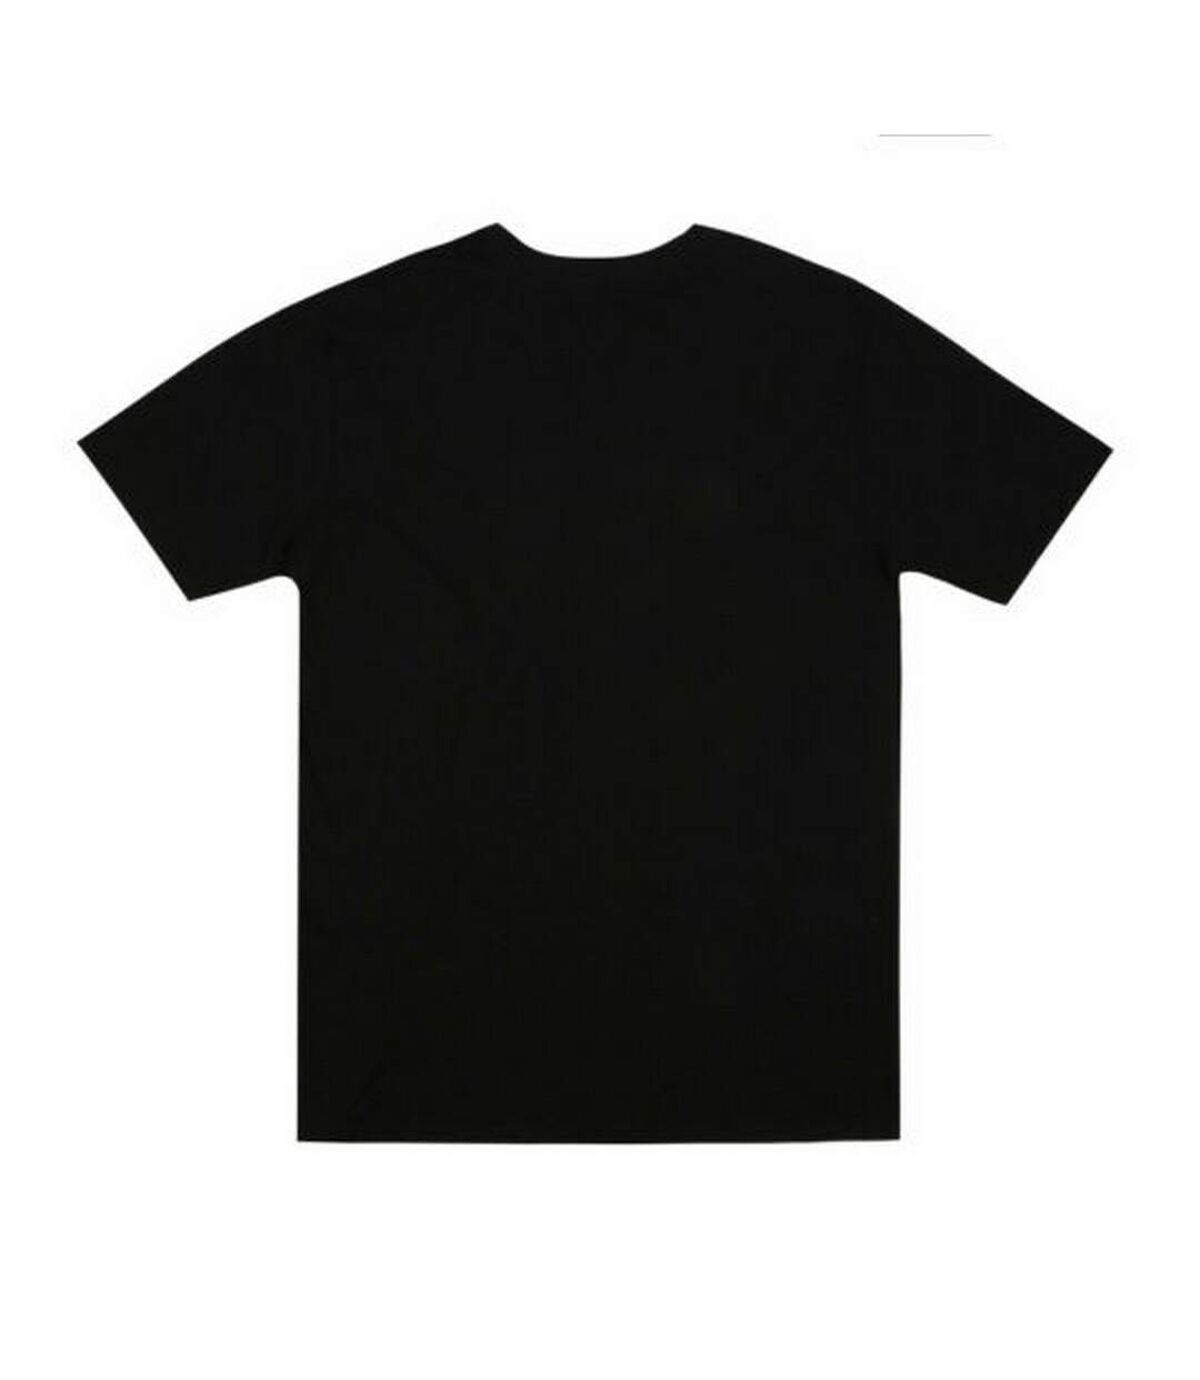 Zoo York - T-shirt - Homme (Noir) - UTTV1358